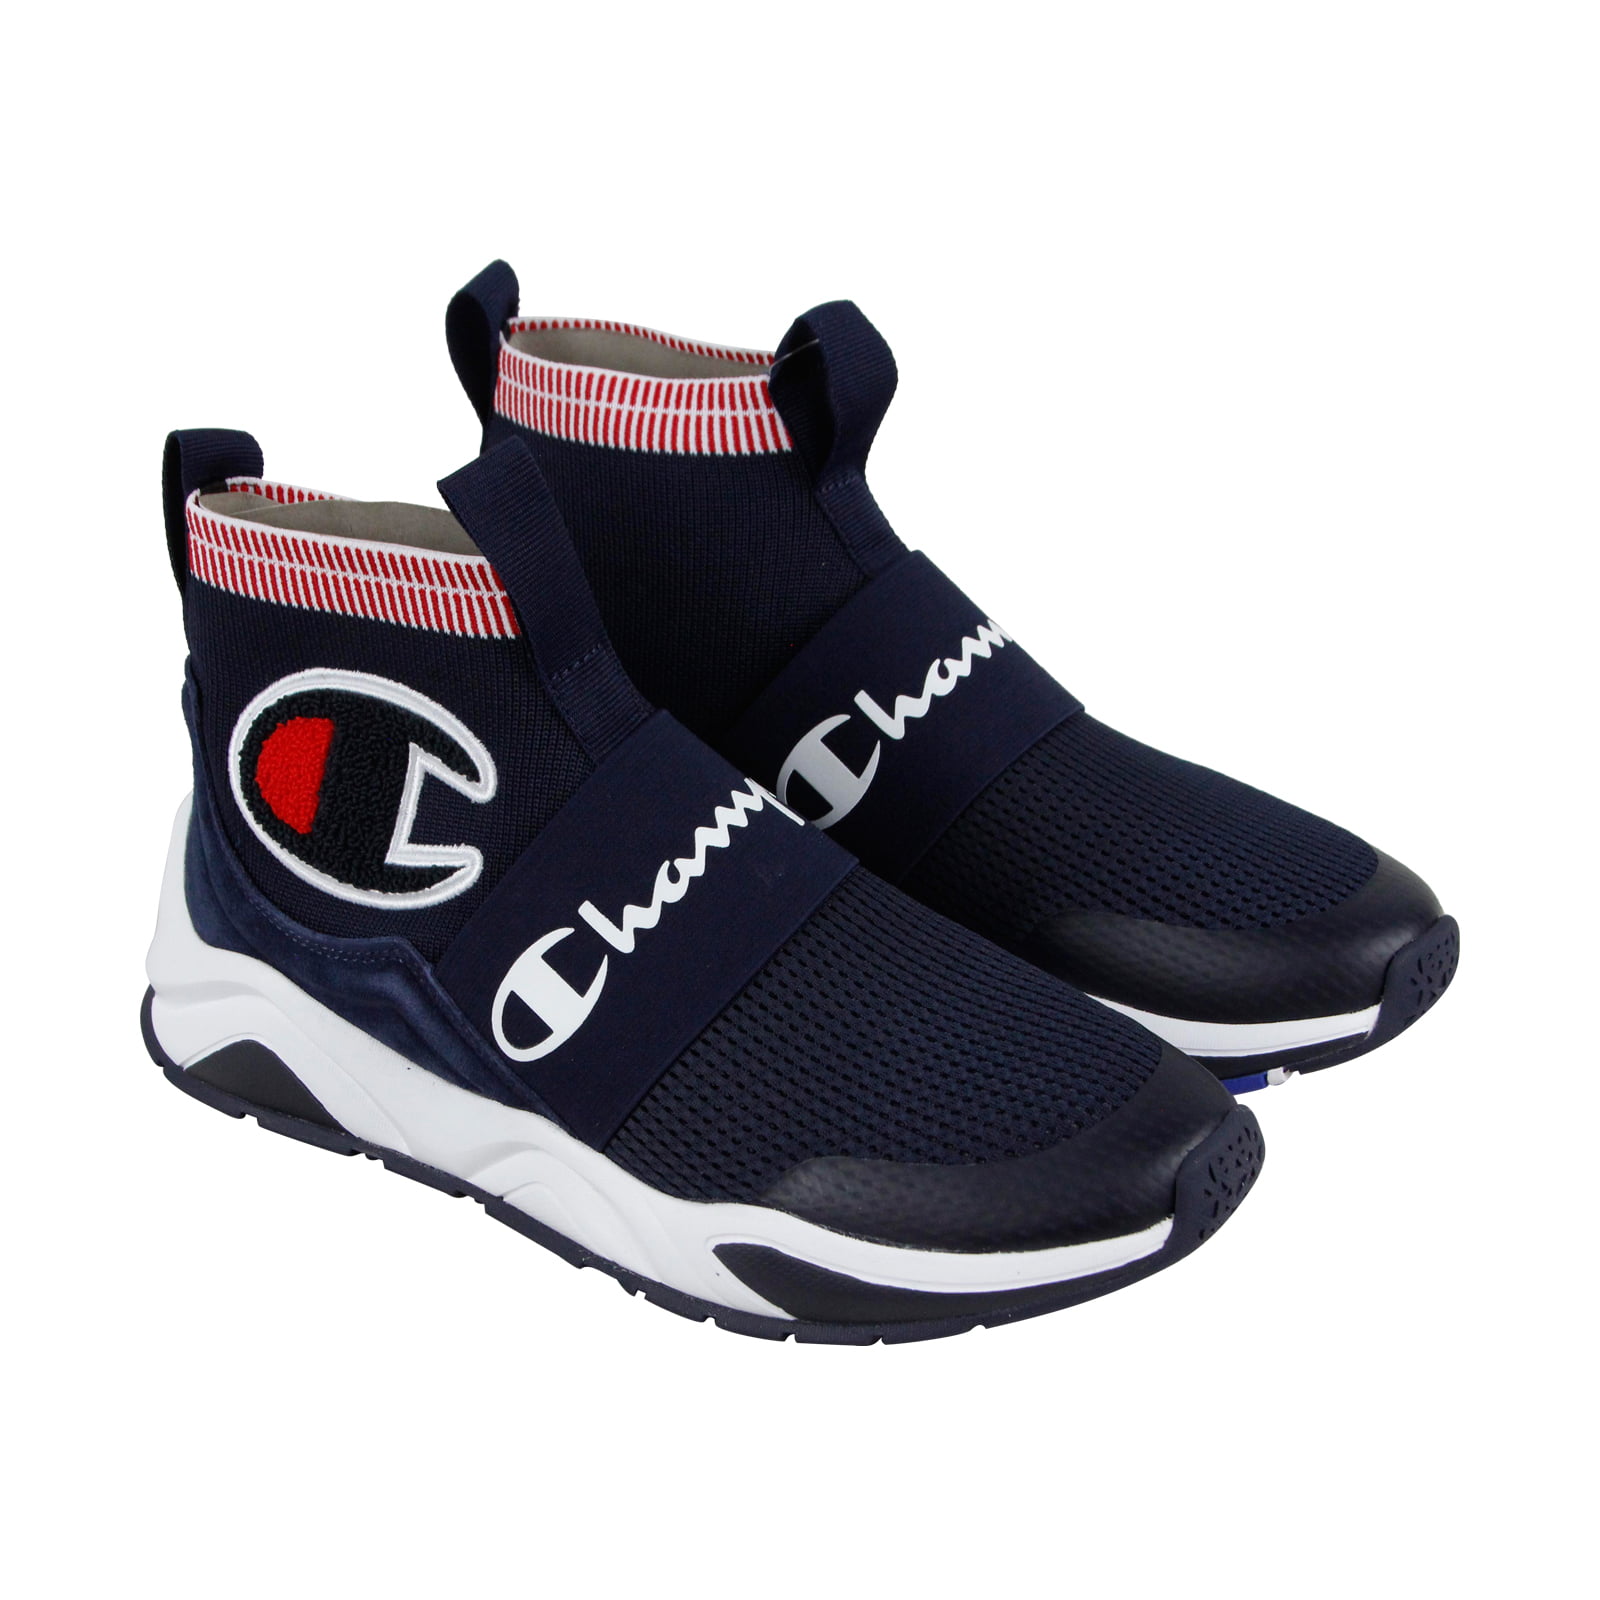 Champion Pro Blue Textile Athletic Slip On Shoes - Walmart.com